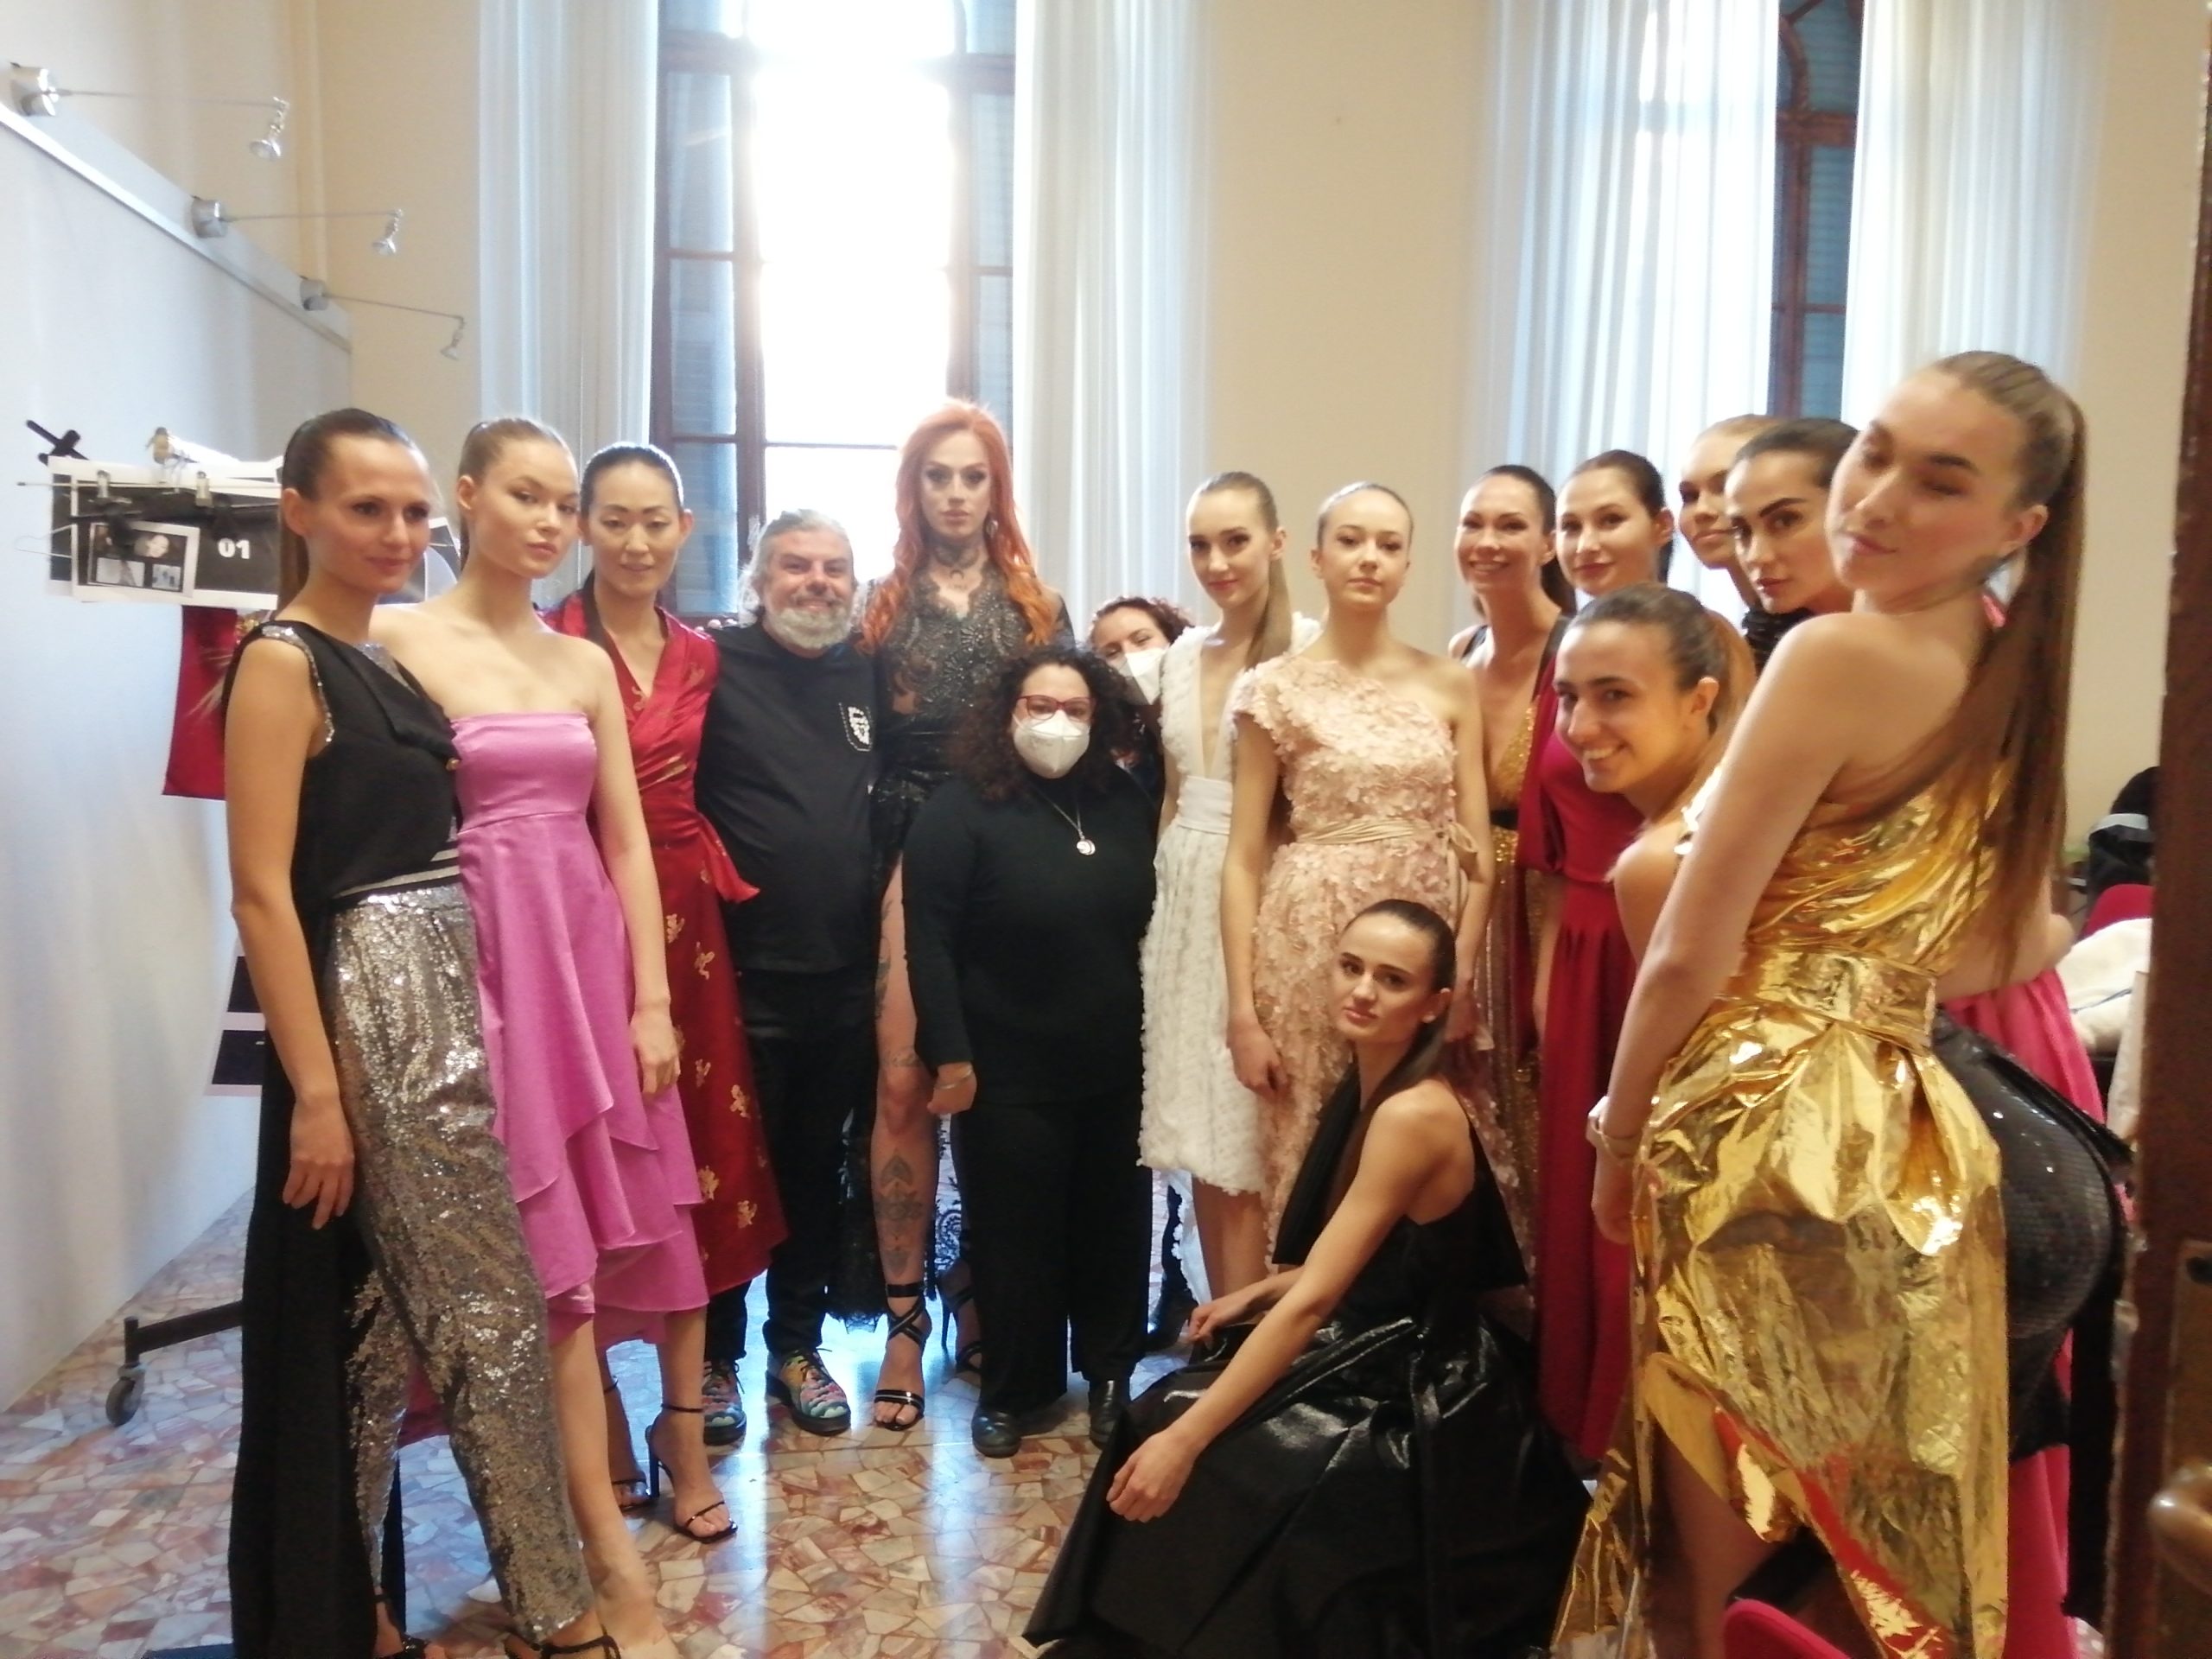 Milano Fashion Week: Andrea Tosetti Collection emoziona e stupisce  a sorpresa in passerella per il Brand sfila Elecktra Bionic vincitrice di Drag Race Italia